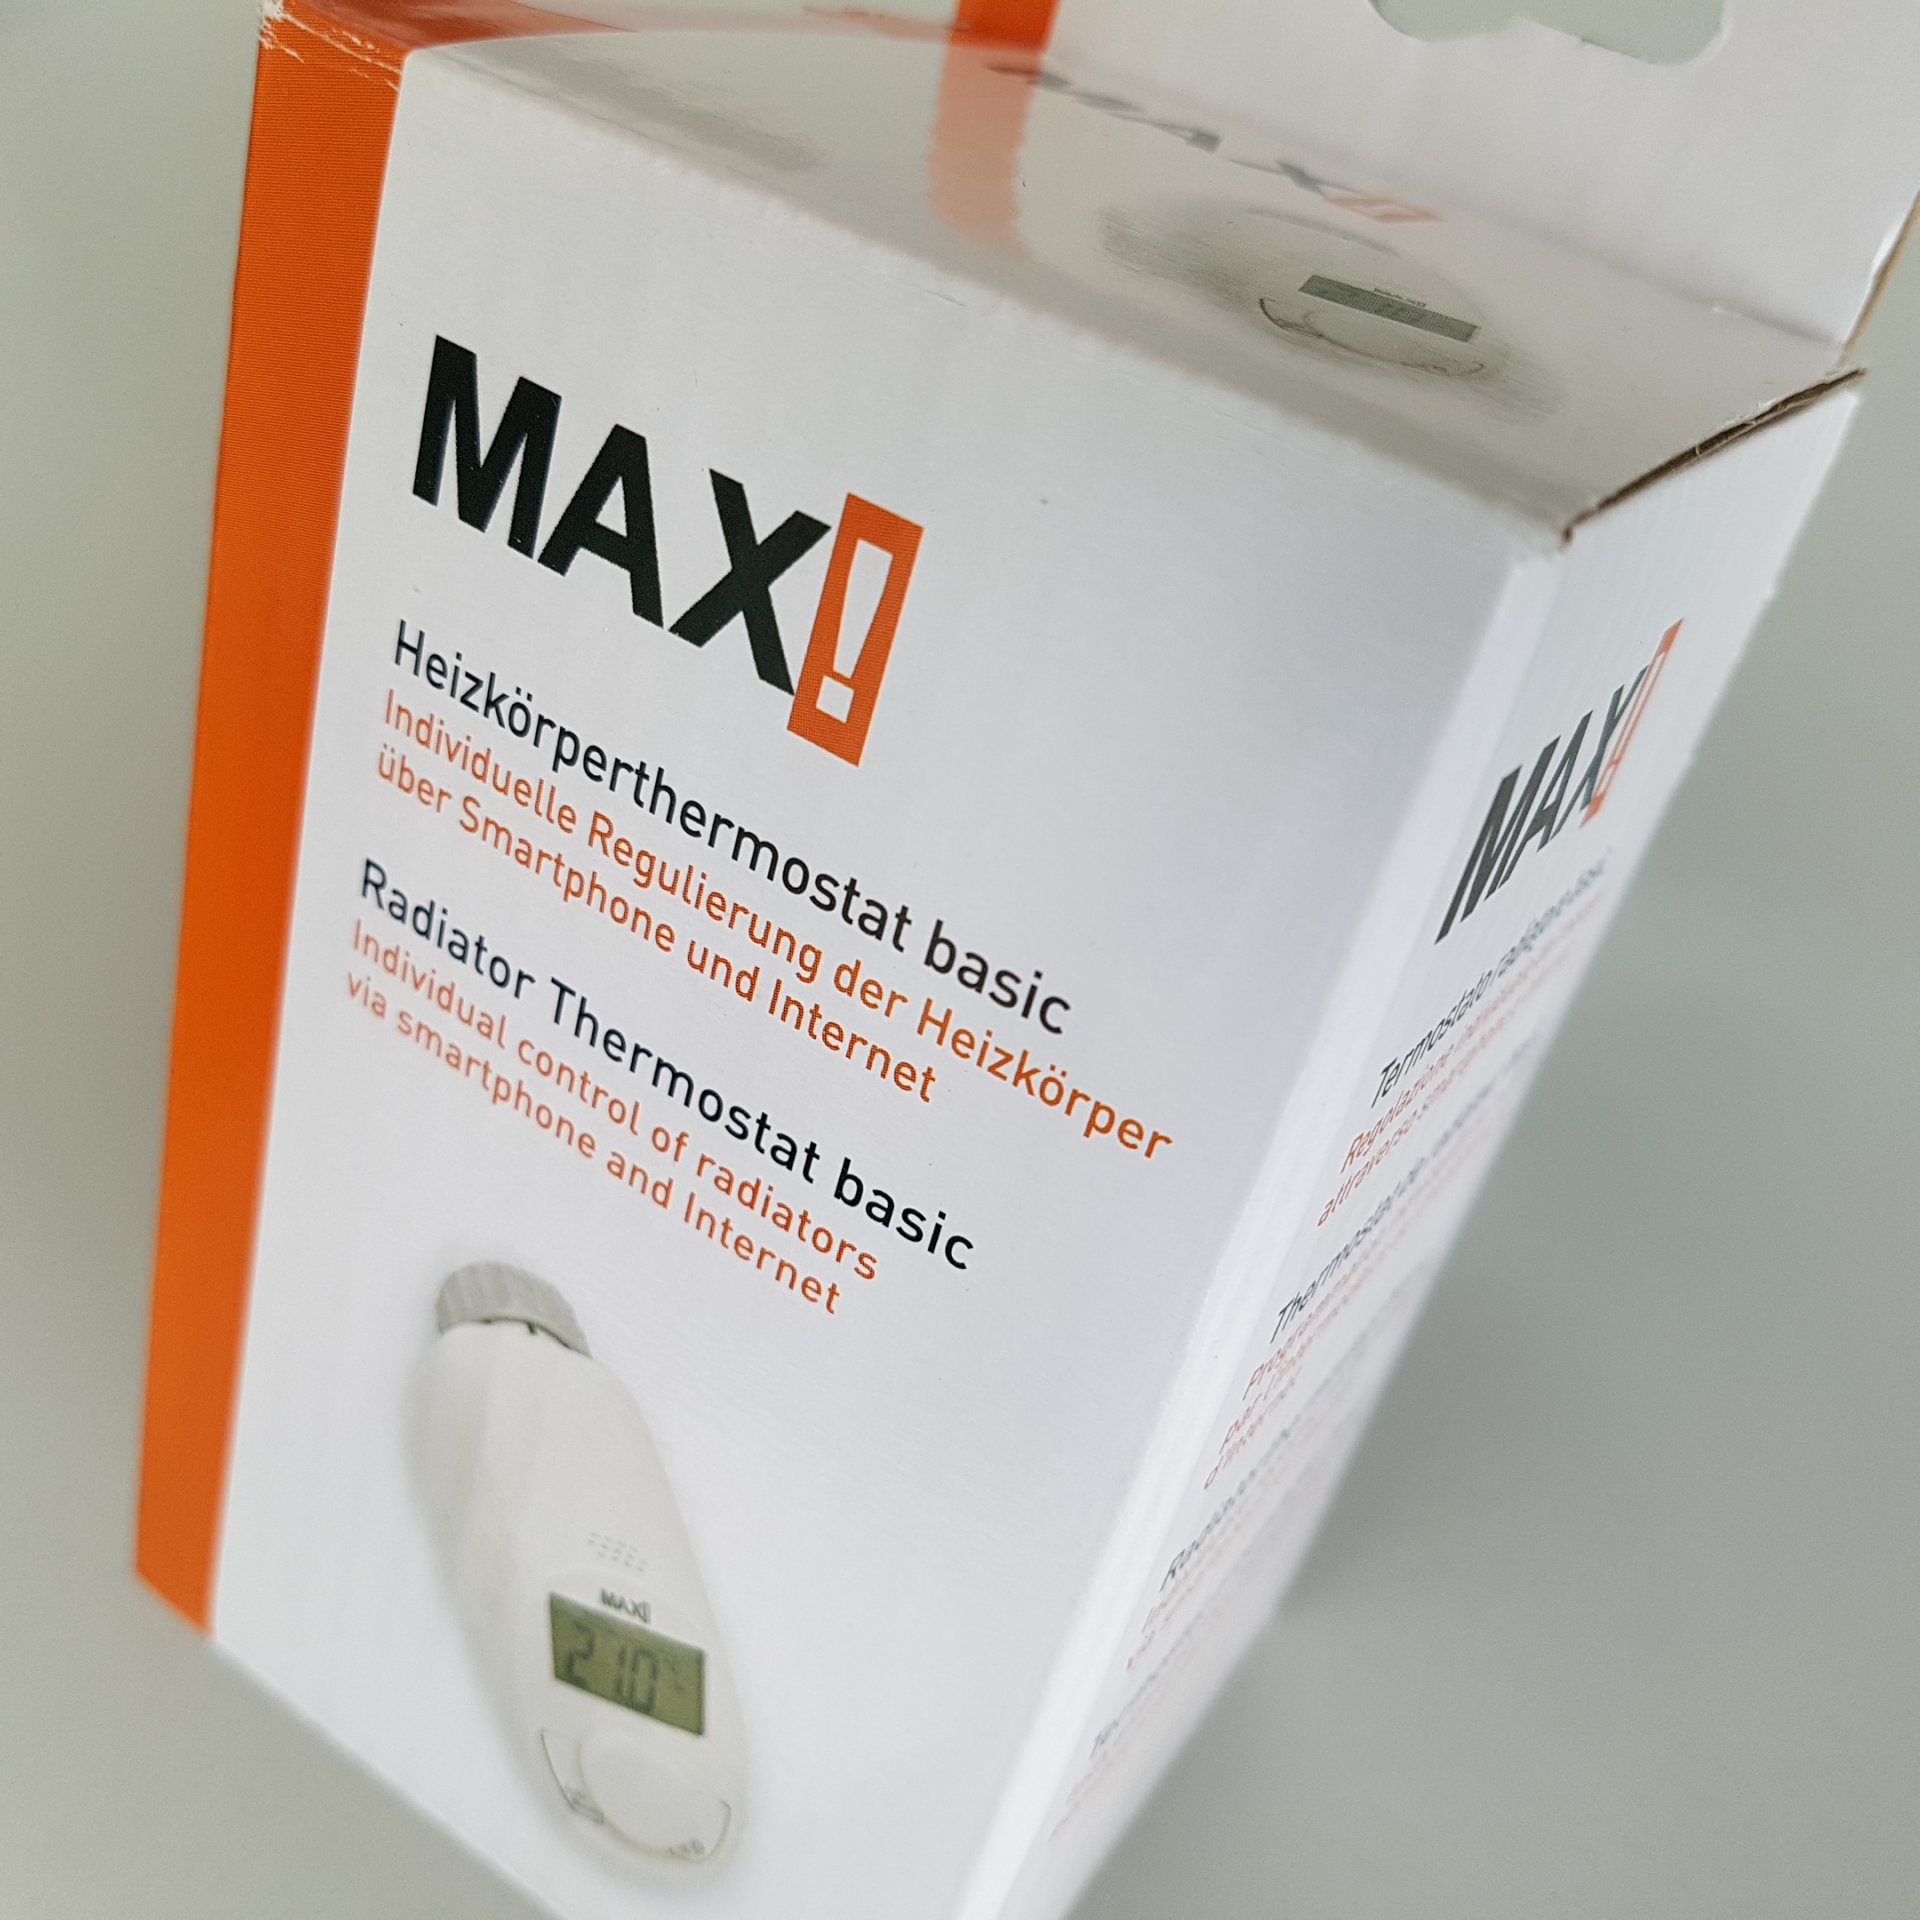 MAX! Пакет Основен стартов за интелигентно управление на парно, 1хCube LAN, 1хЕлектронна термоглава с безжично управление, 1хСензор за прозорец